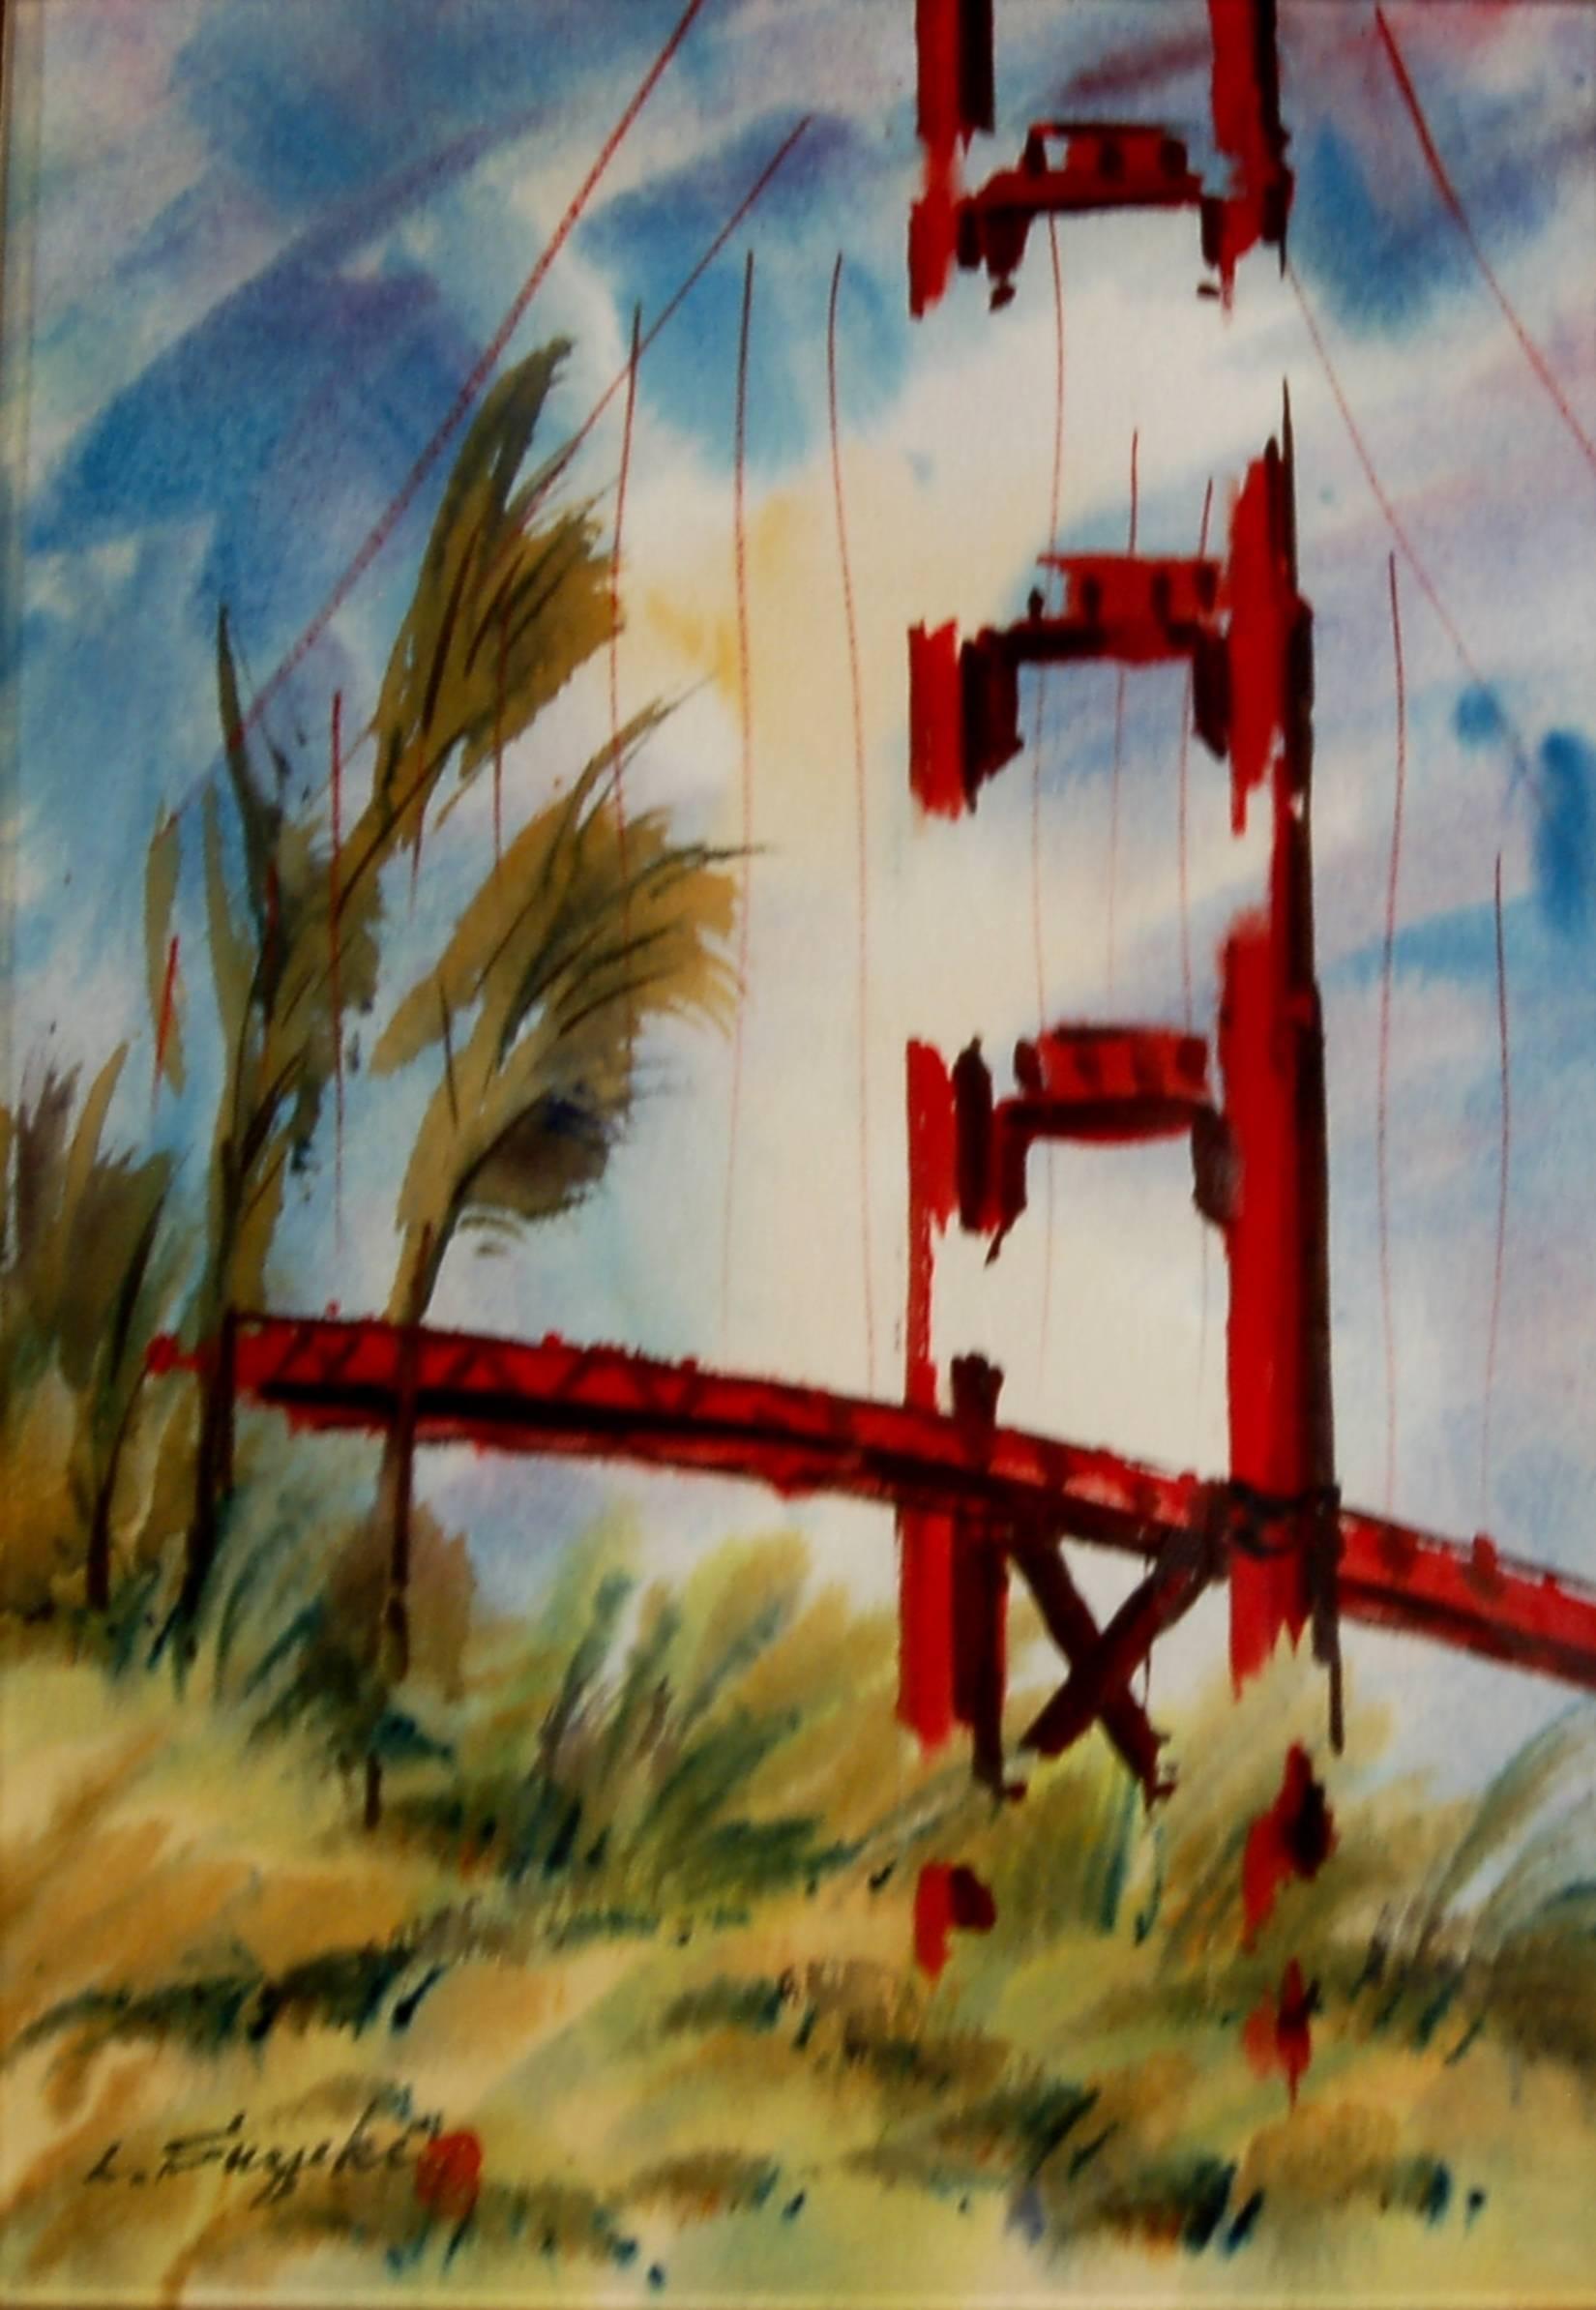 Golden Gate Bridge, San Francisco - Art by Lewis Suzuki